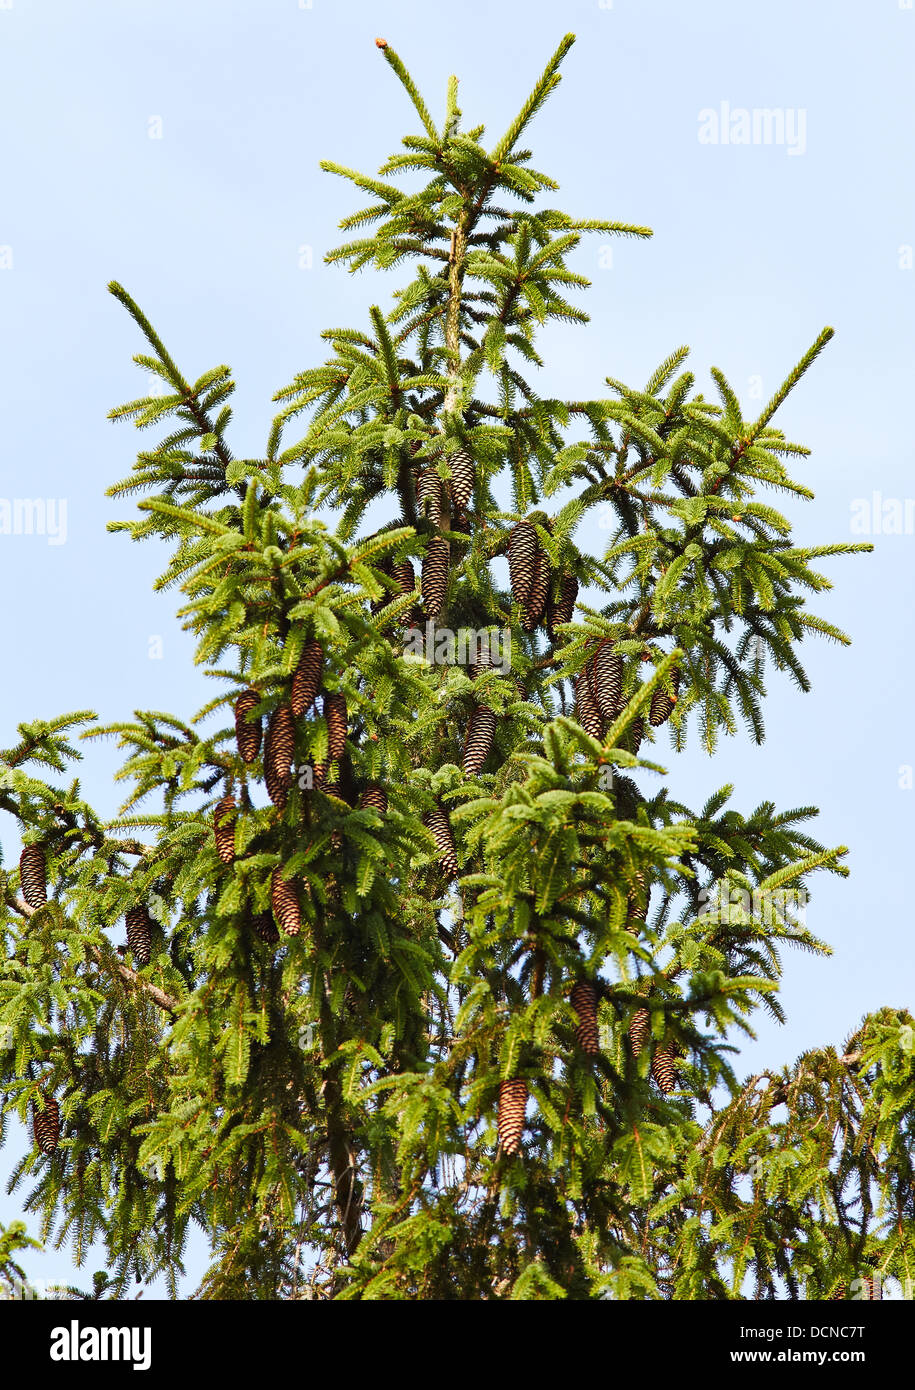 Oberen Ästen und hängenden Zapfen der Fichte (Picea) Baum in einem Waldgebiet UK Forstwirtschaft Stockfoto